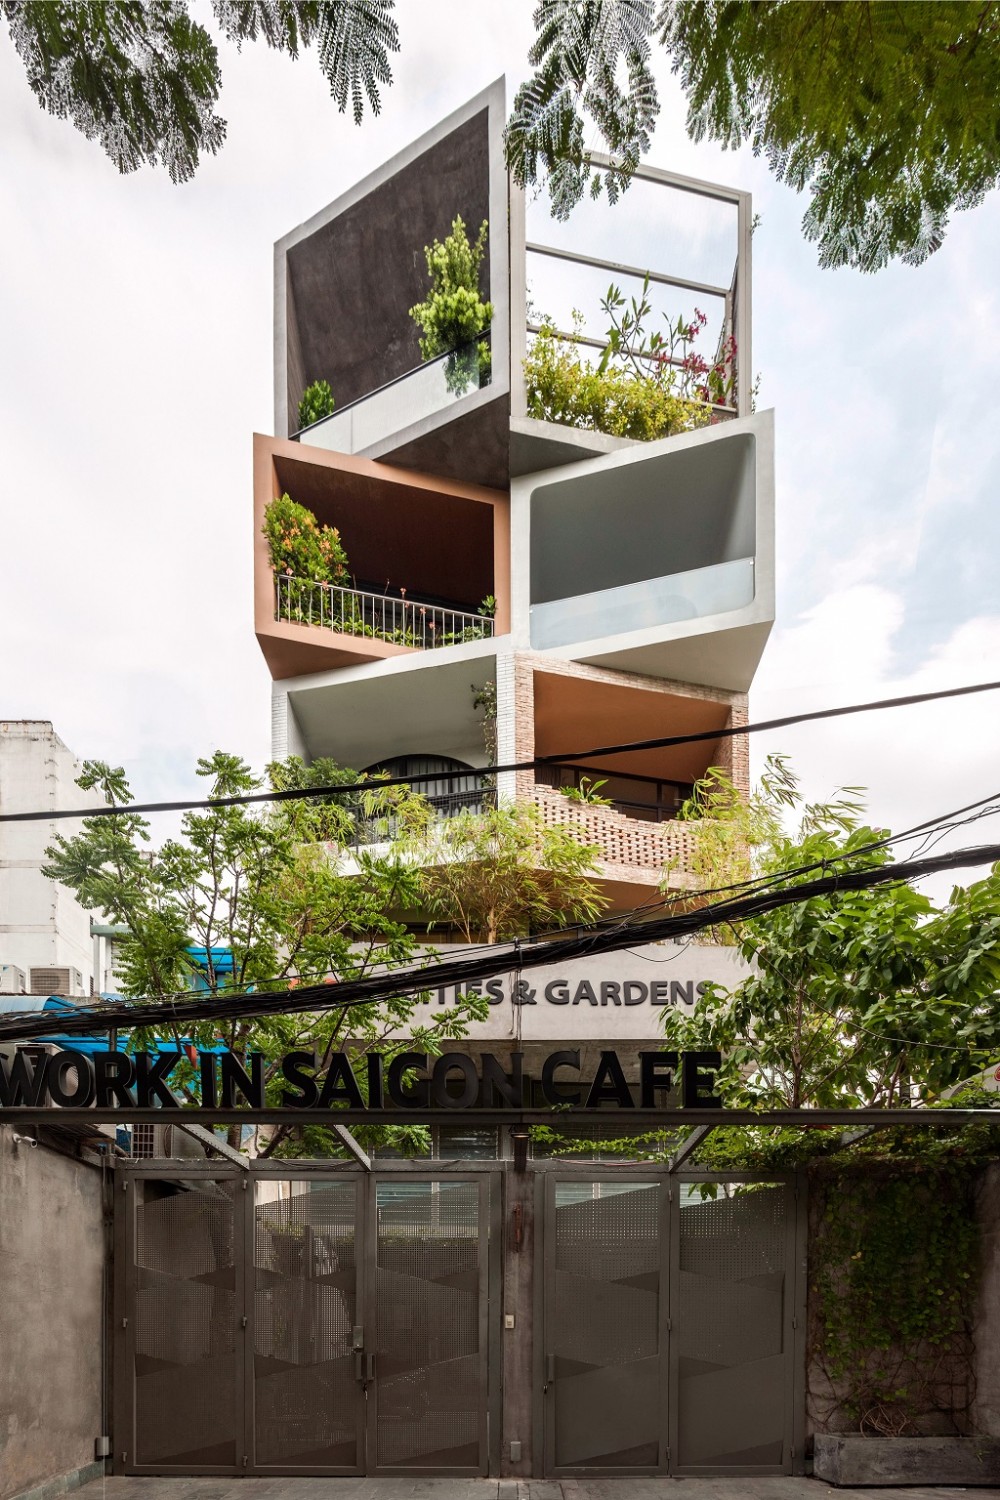 Cities & Gardens – Ngôi nhà phố và vườn giữa Sài Gòn